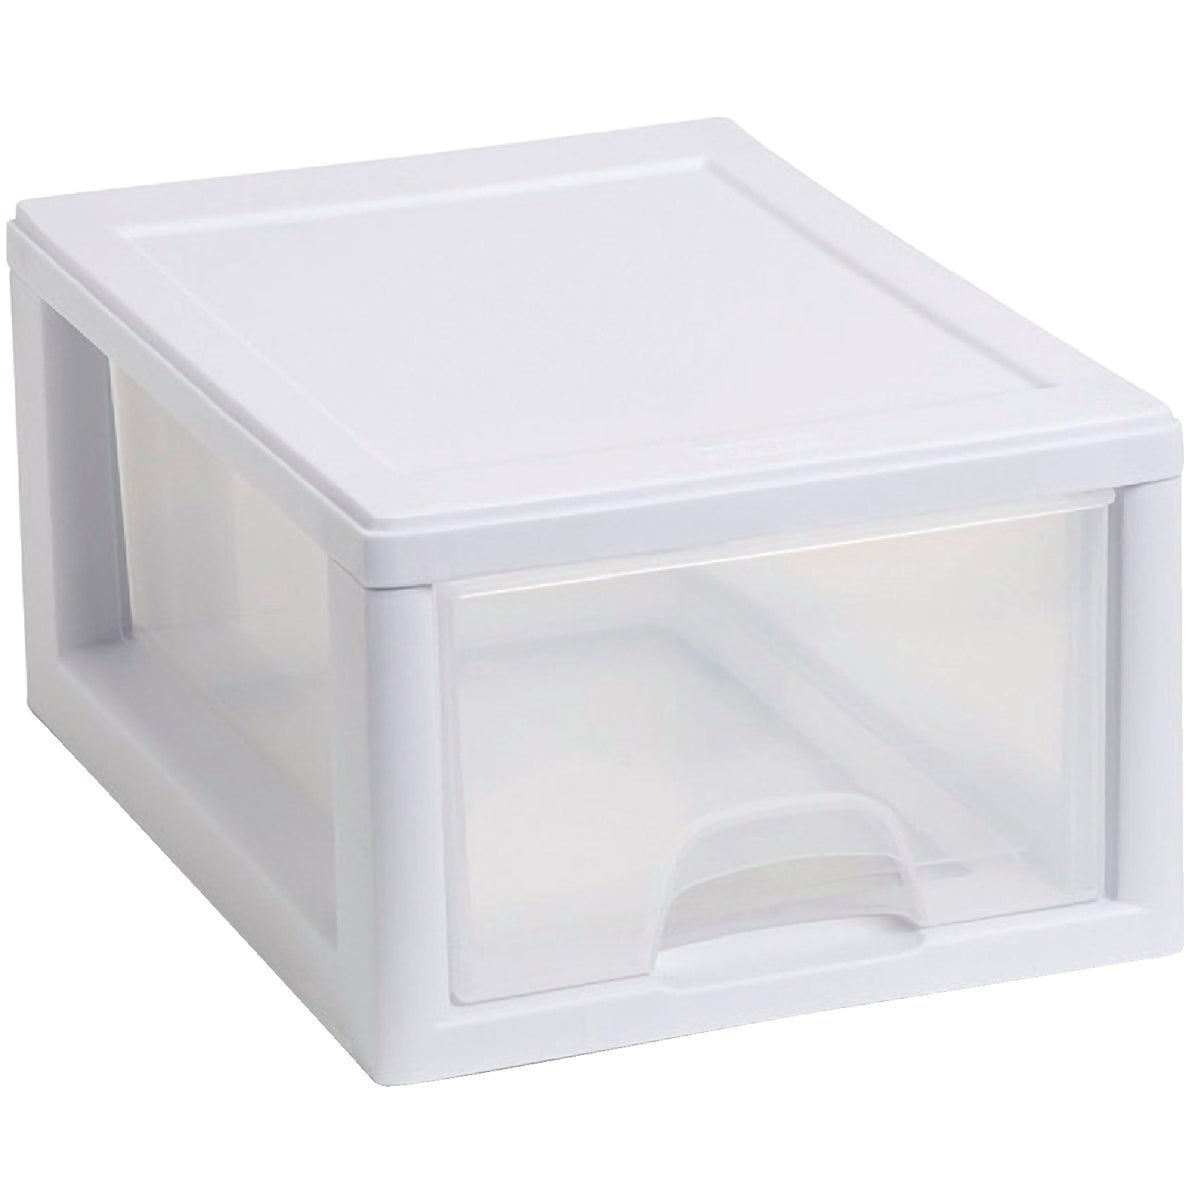 Sterilite 6 qt White Storage Container